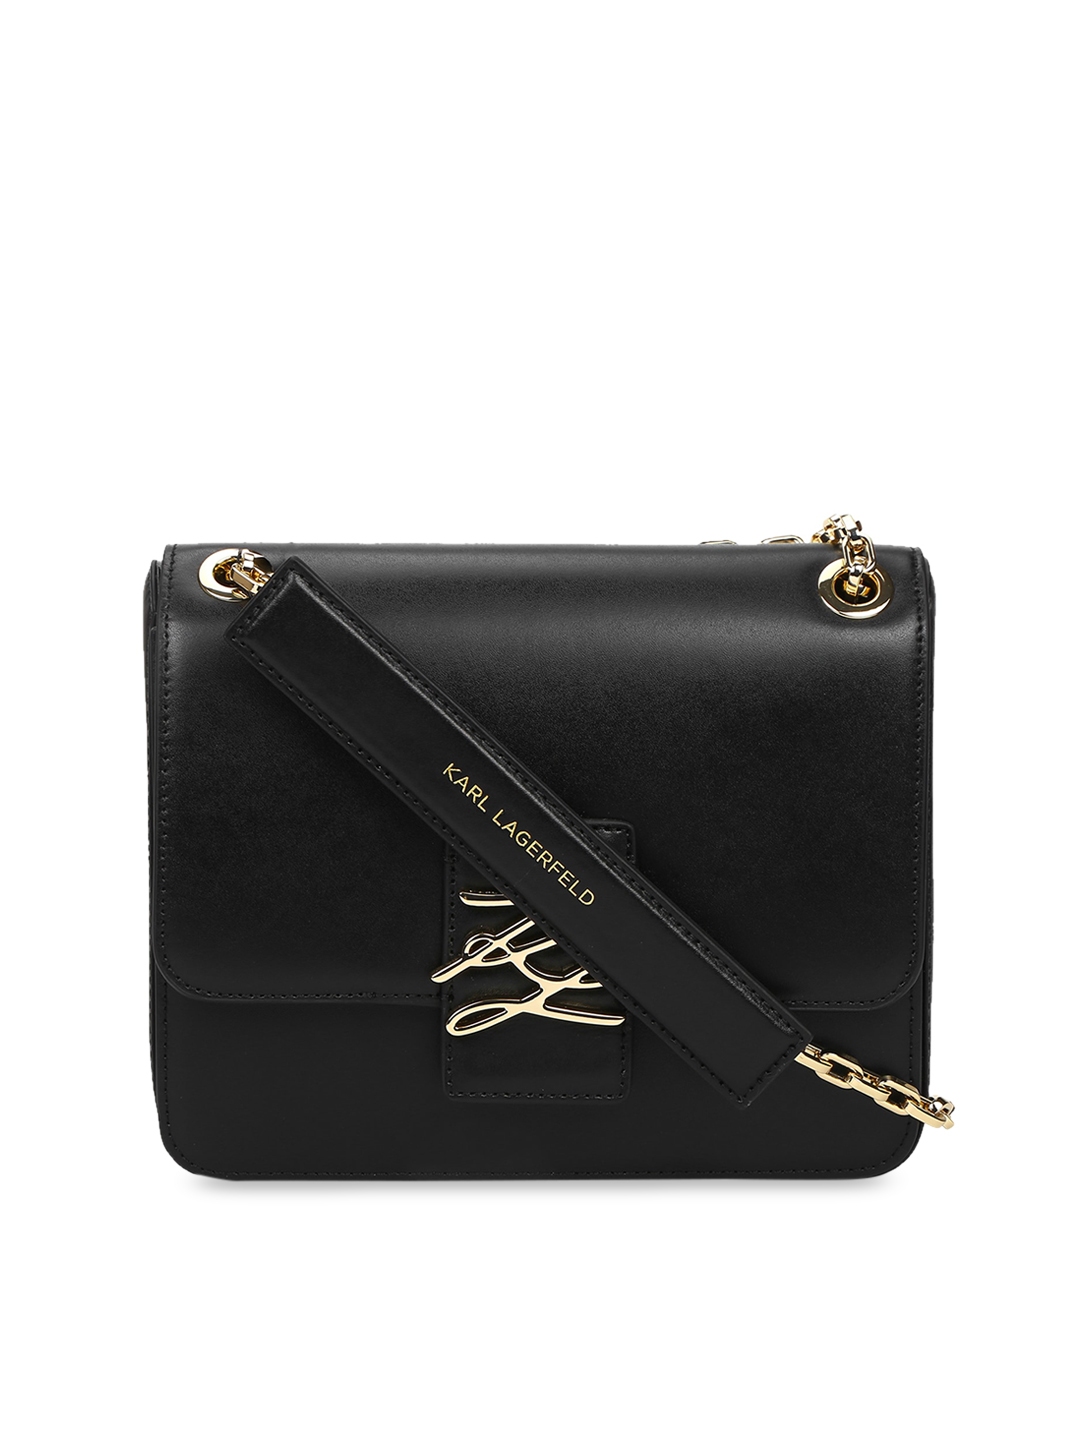 Buy Karl Lagerfeld Women Black Structured Sling Bag - Handbags for ...